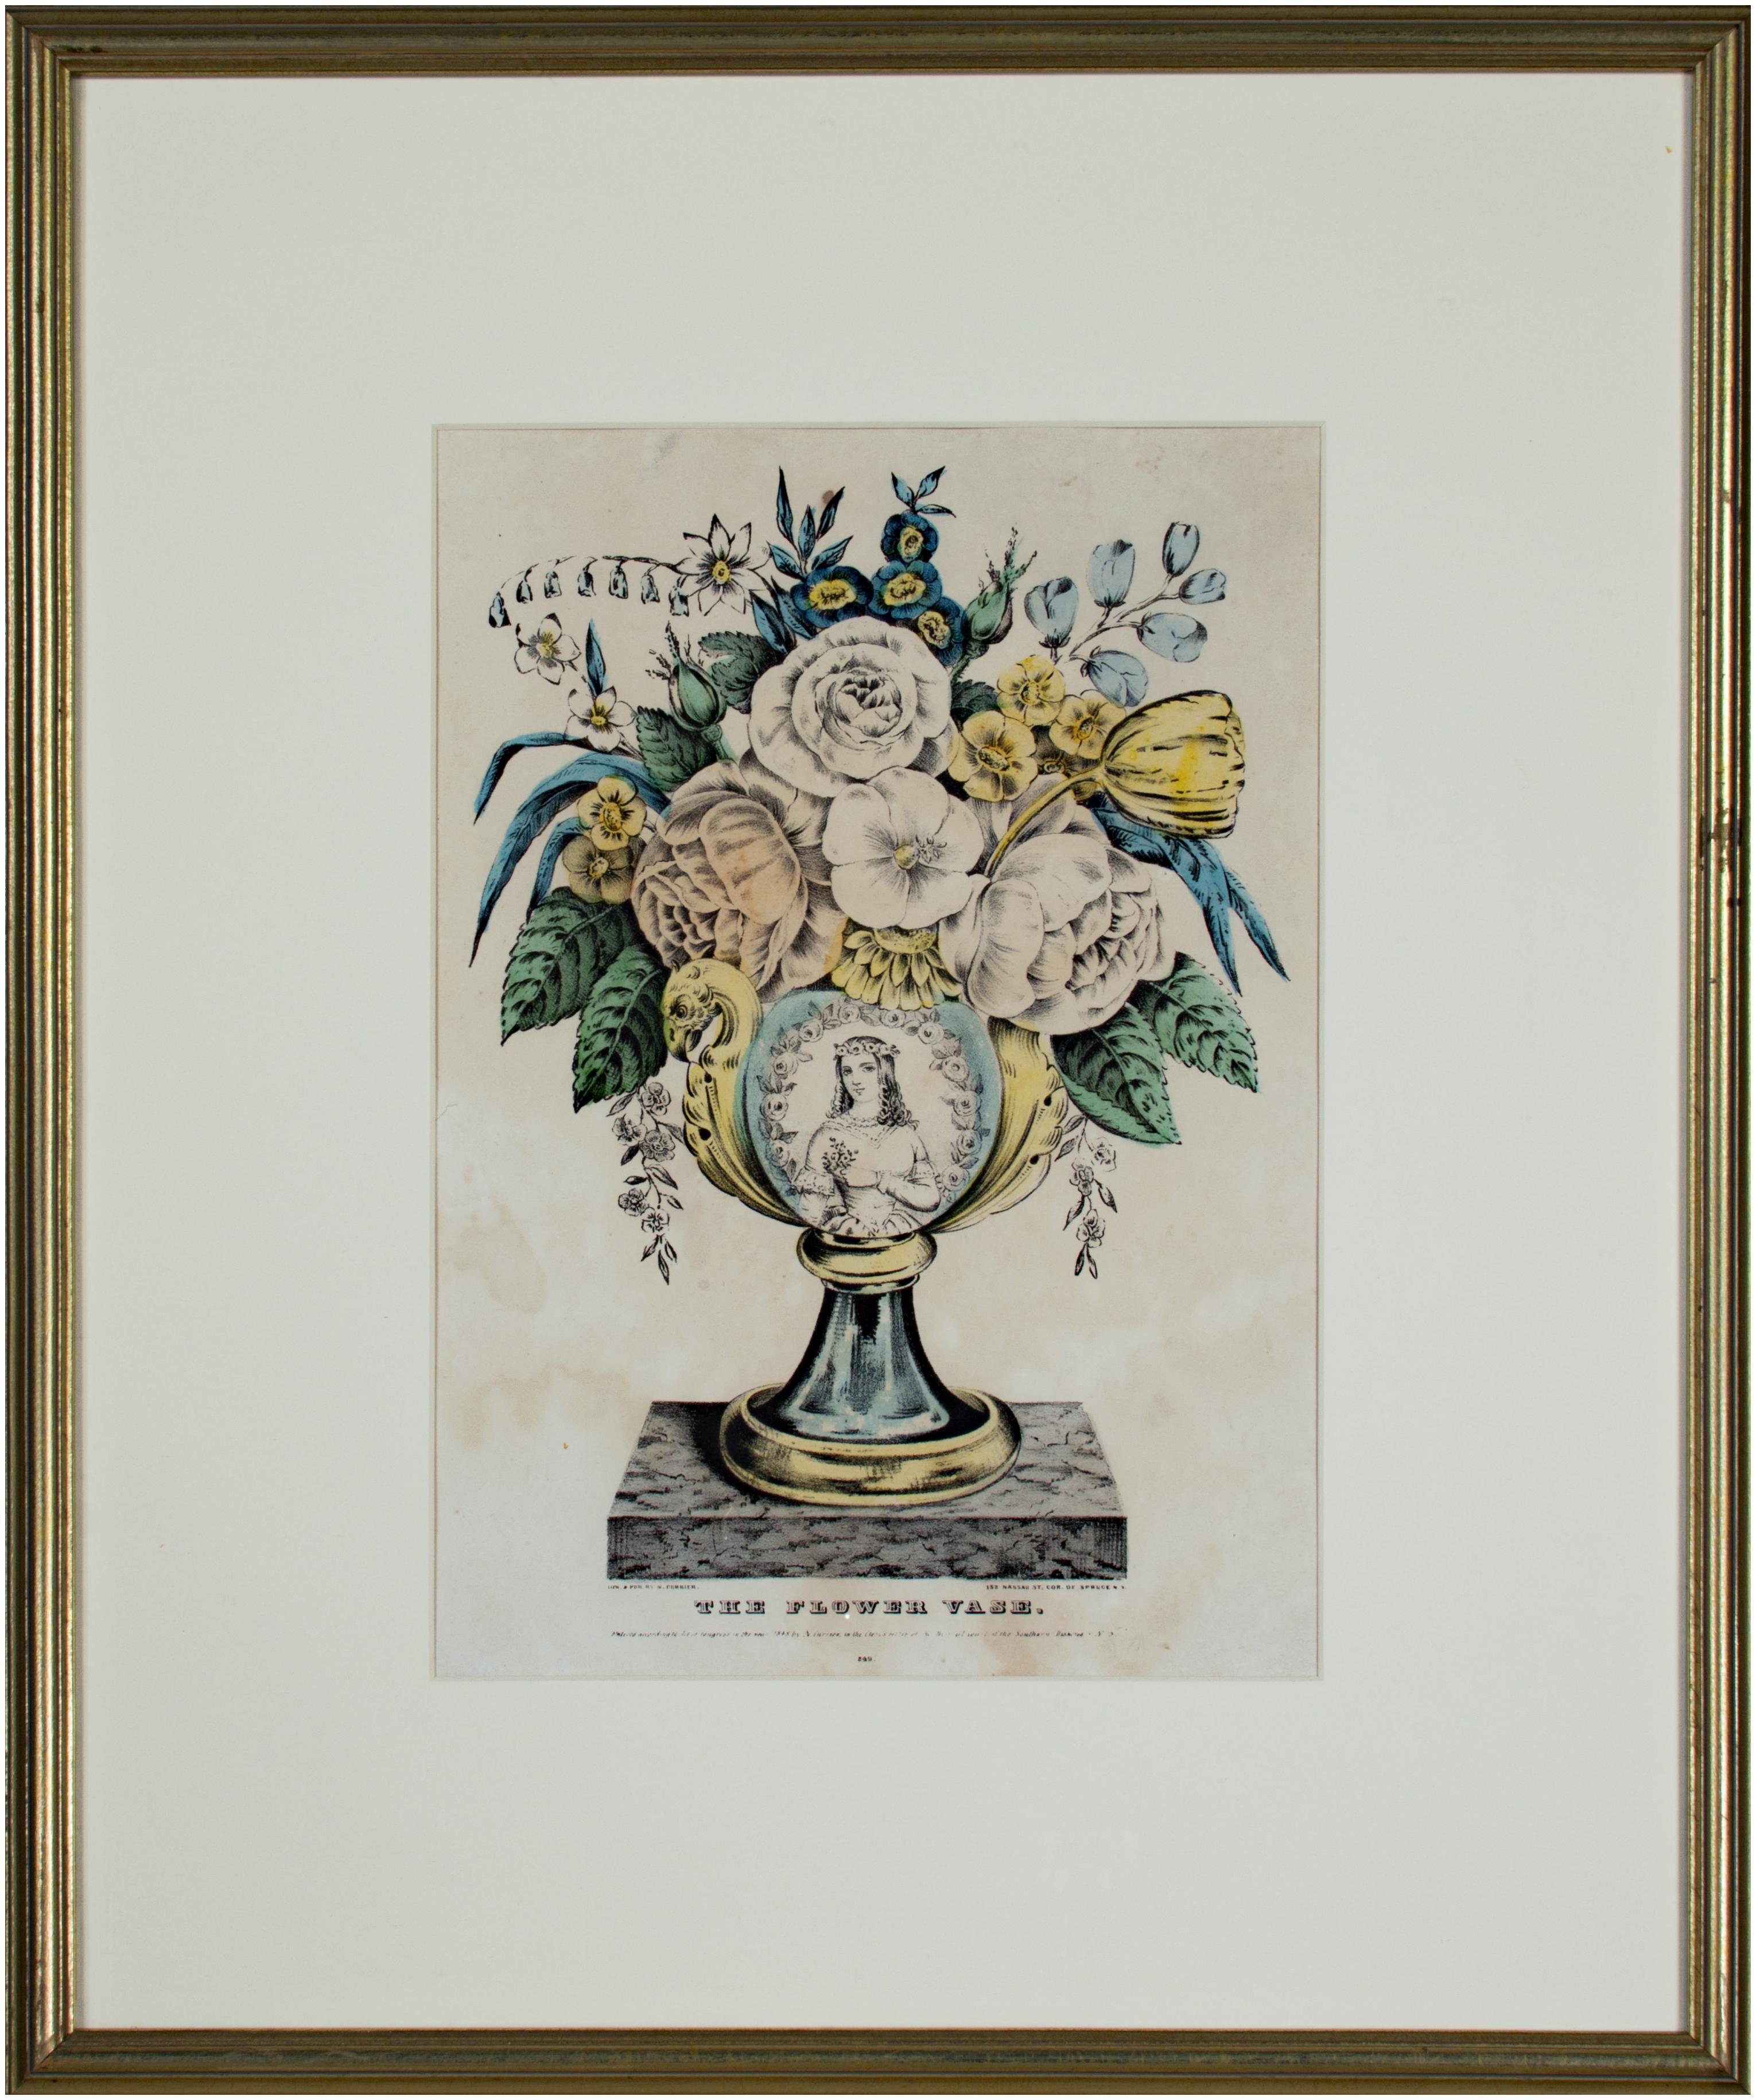 Originale handkolorierte Lithographie „Die Blumenvase“ von Nathaniel Currier